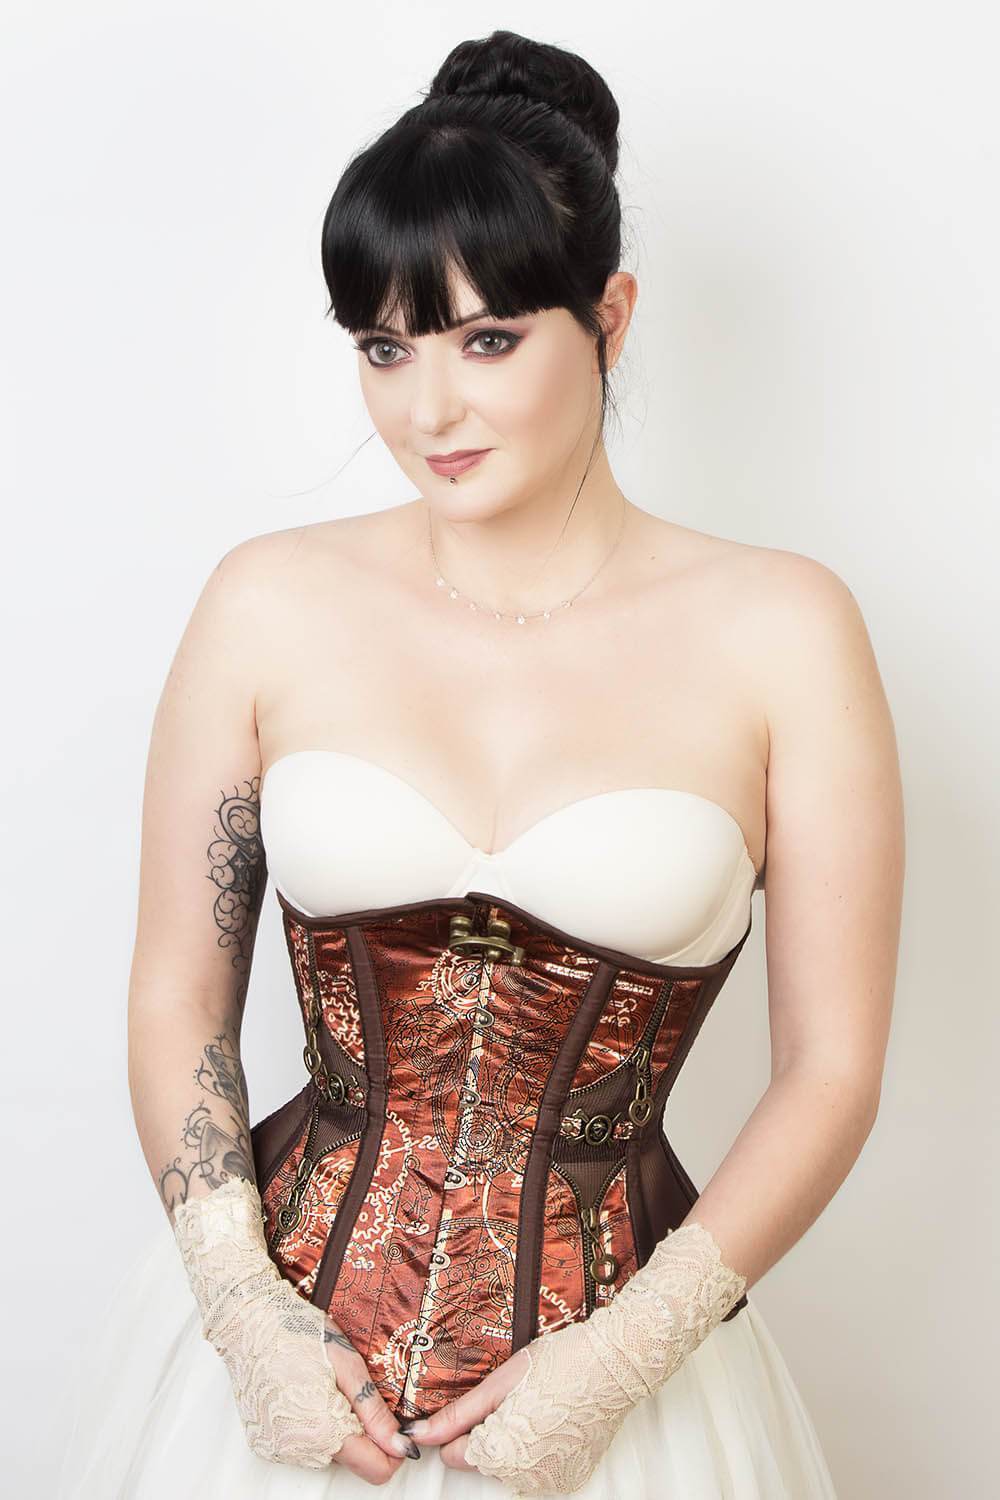 https://www.corsetdeal.com/cdn/shop/products/EL-223_F_Elyzza_London_Corset_Corsetdeal_Bespoke_Corset_waist_training_corset_402baa50-ff7d-4c62-b034-010dfa7b4587.jpg?v=1581675337